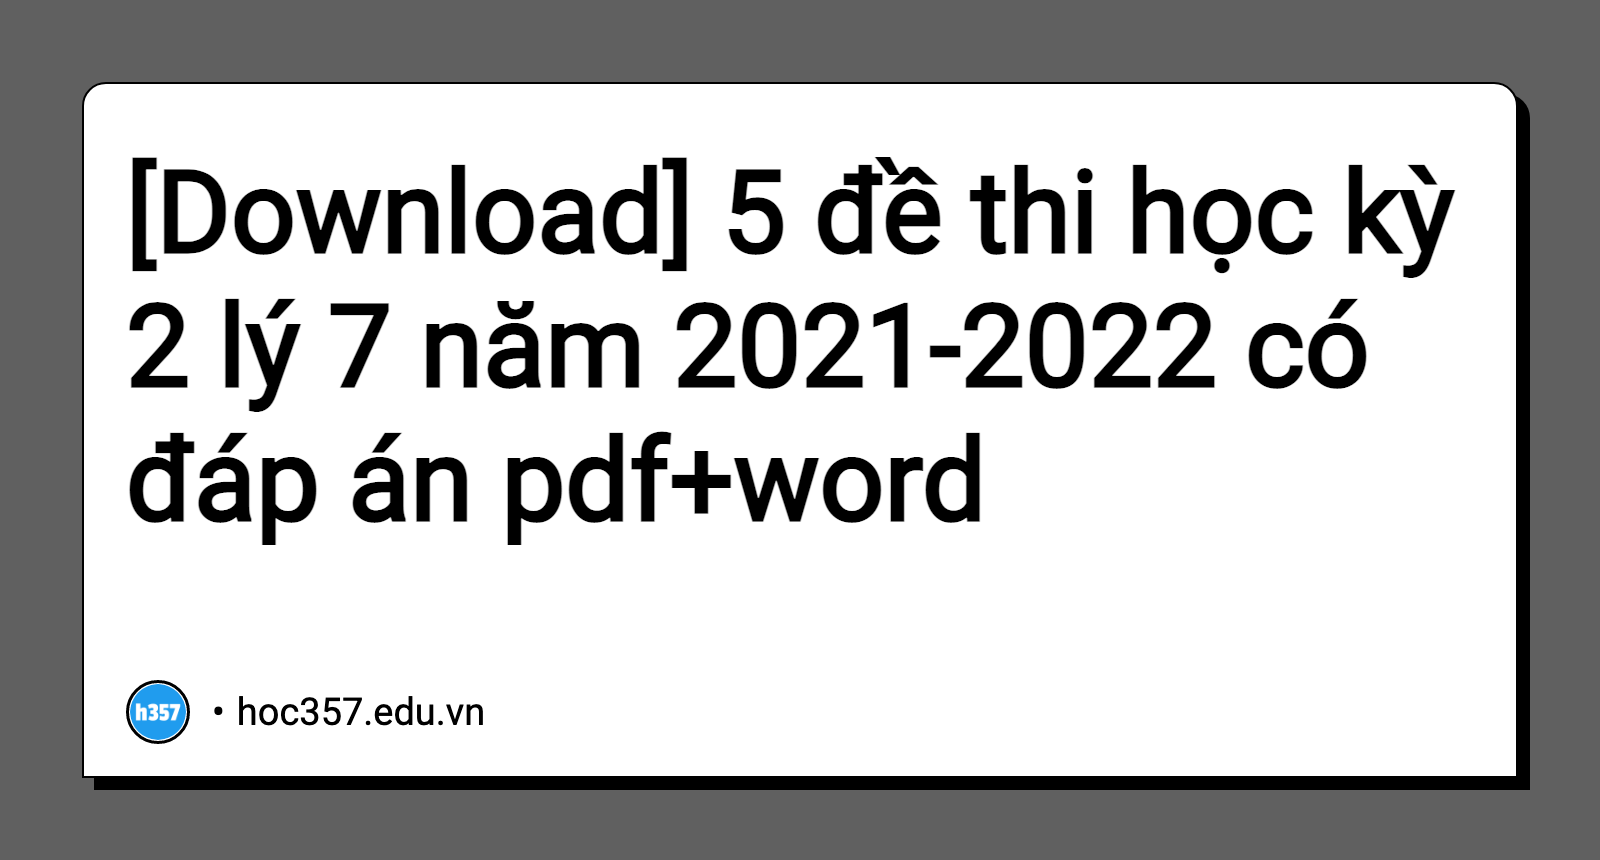 Hình minh họa 5 đề thi học kỳ 2 lý 7 năm 2021-2022 có đáp án